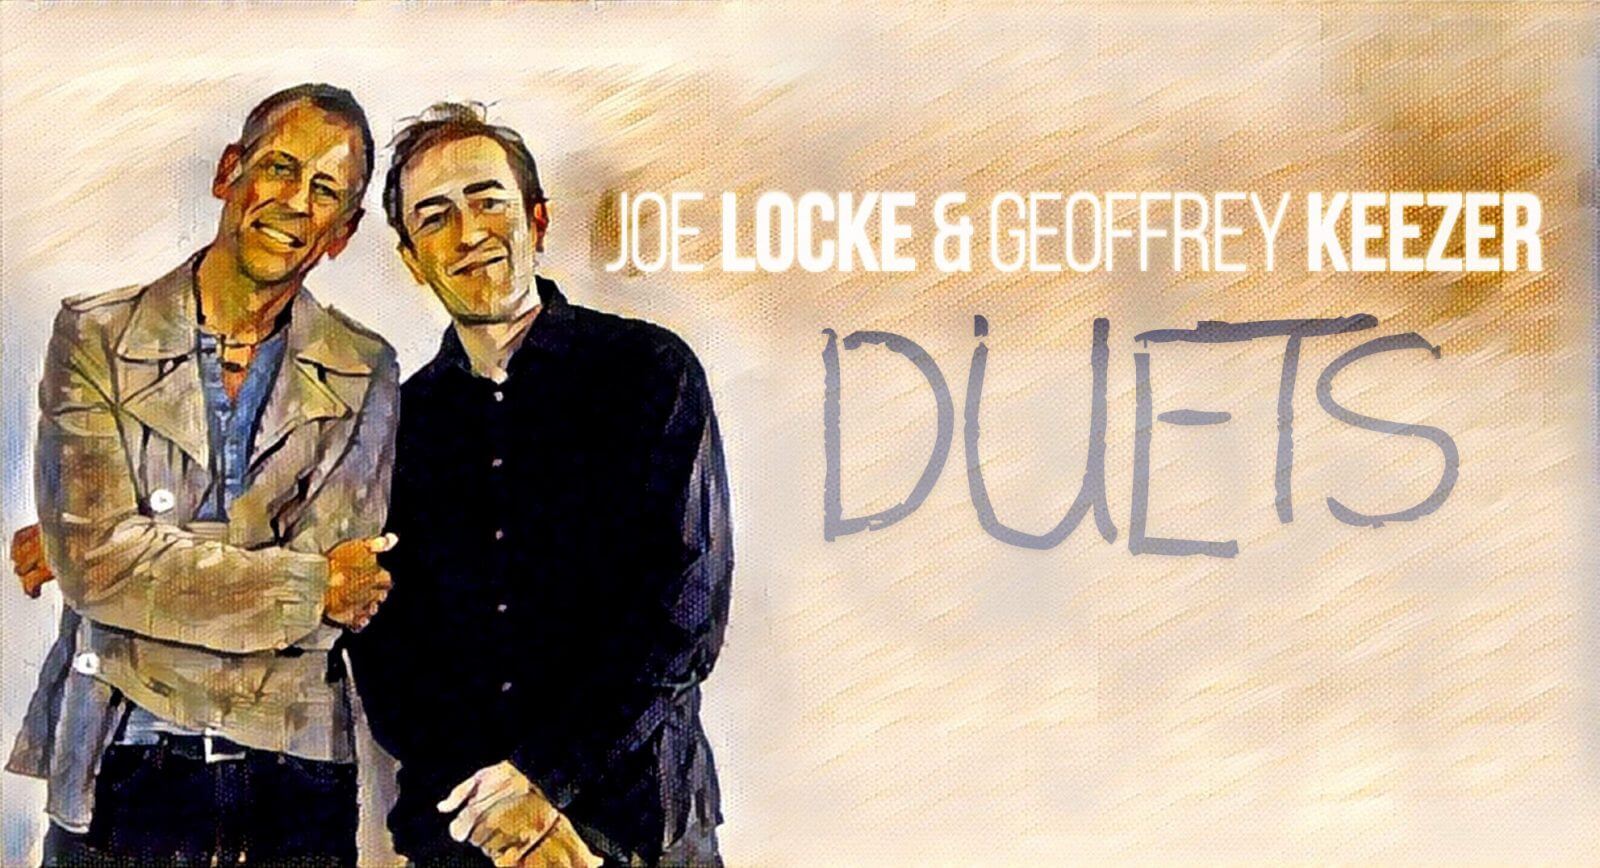 Joe Locke & Geoffrey Keezer Duets